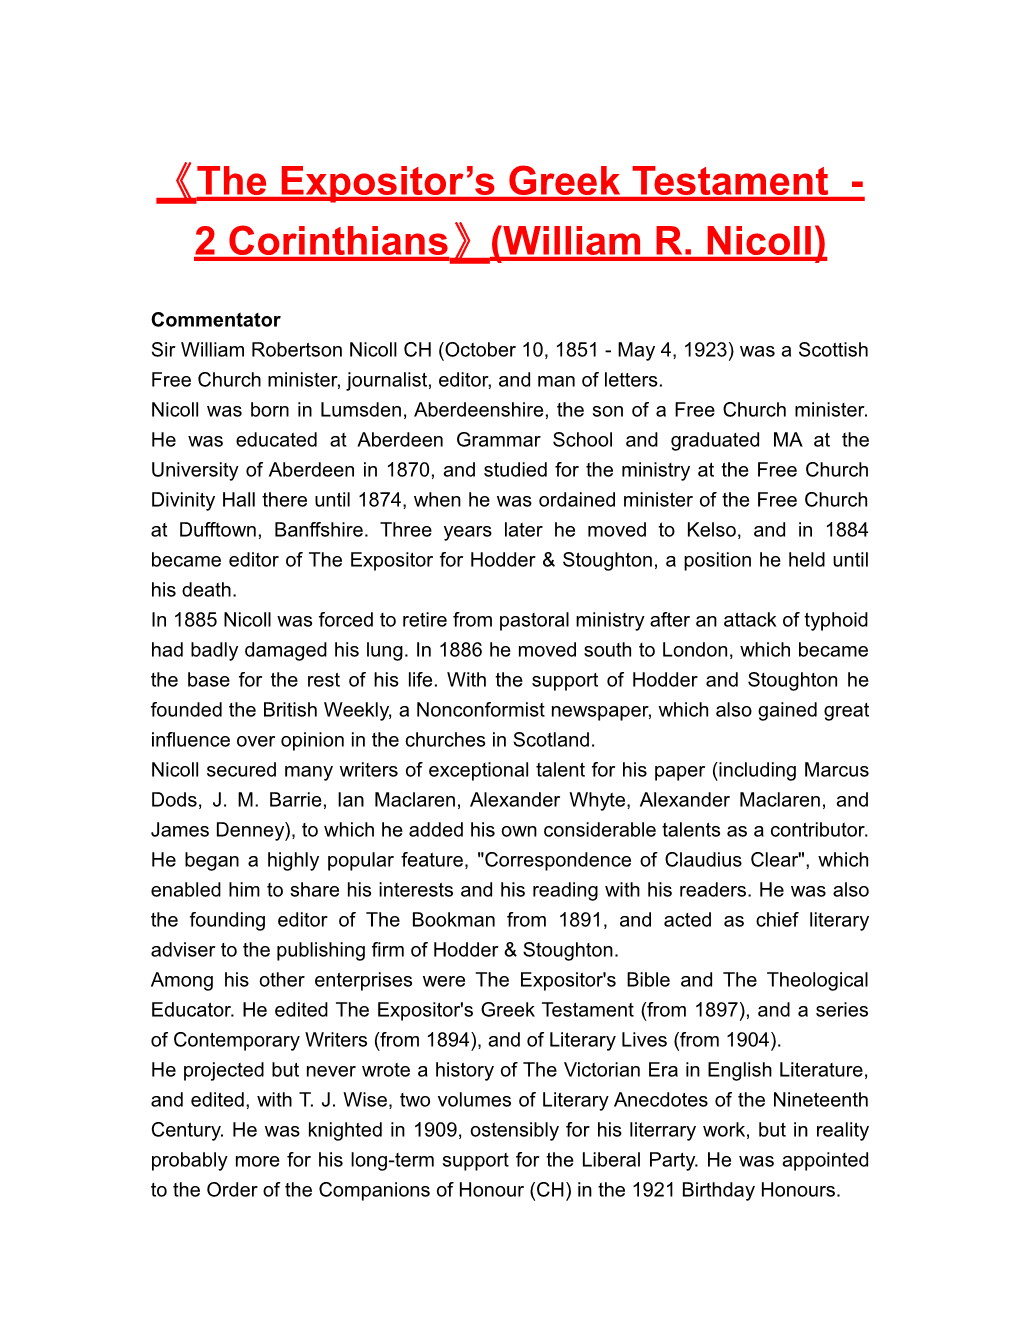 The Expositor Sgreek Testament -2 Corinthians (William R. Nicoll)